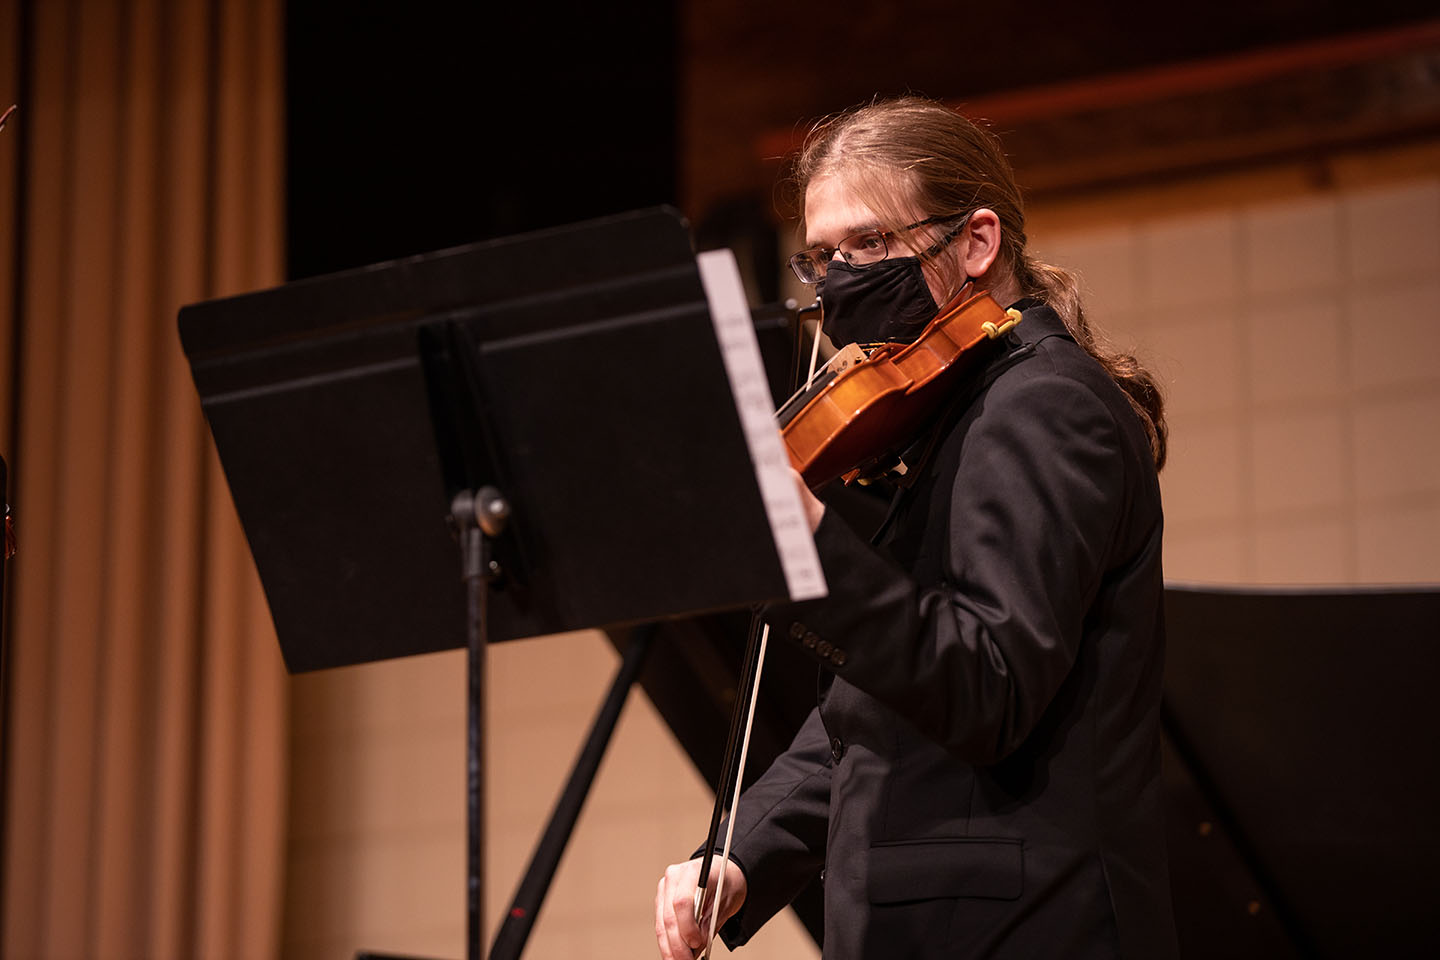 Violin and viola studio presents student recital